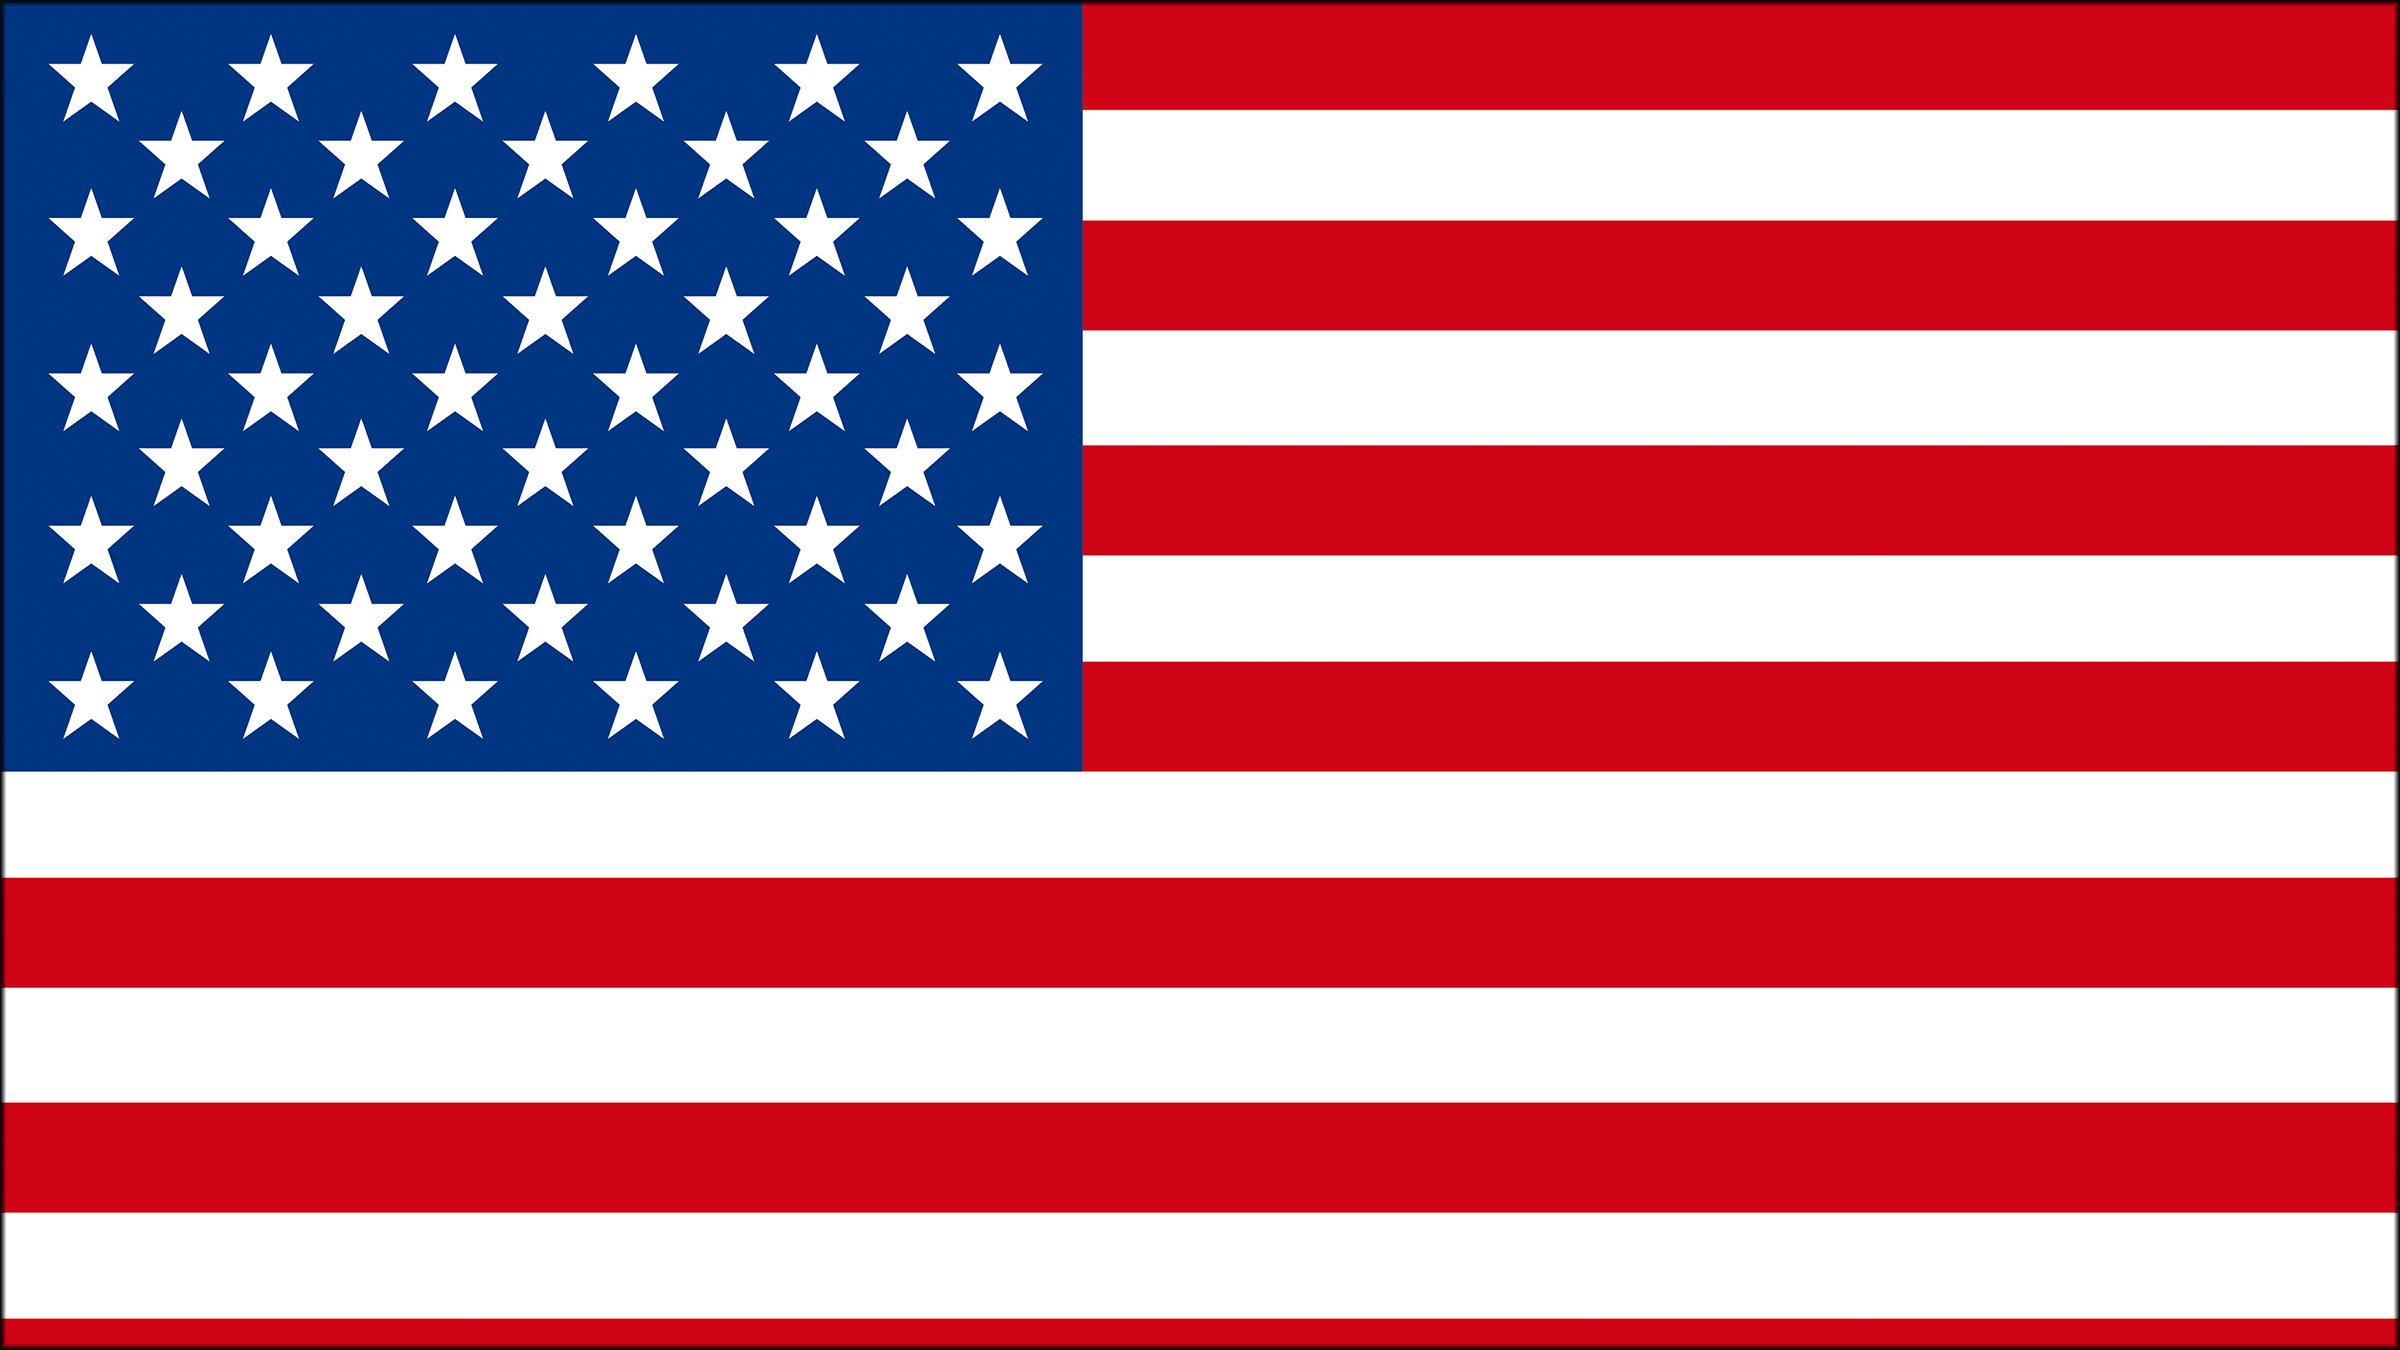 Las Barras Y Las Estrellas En La Bandera De Estados Unidos Hot Sex Picture